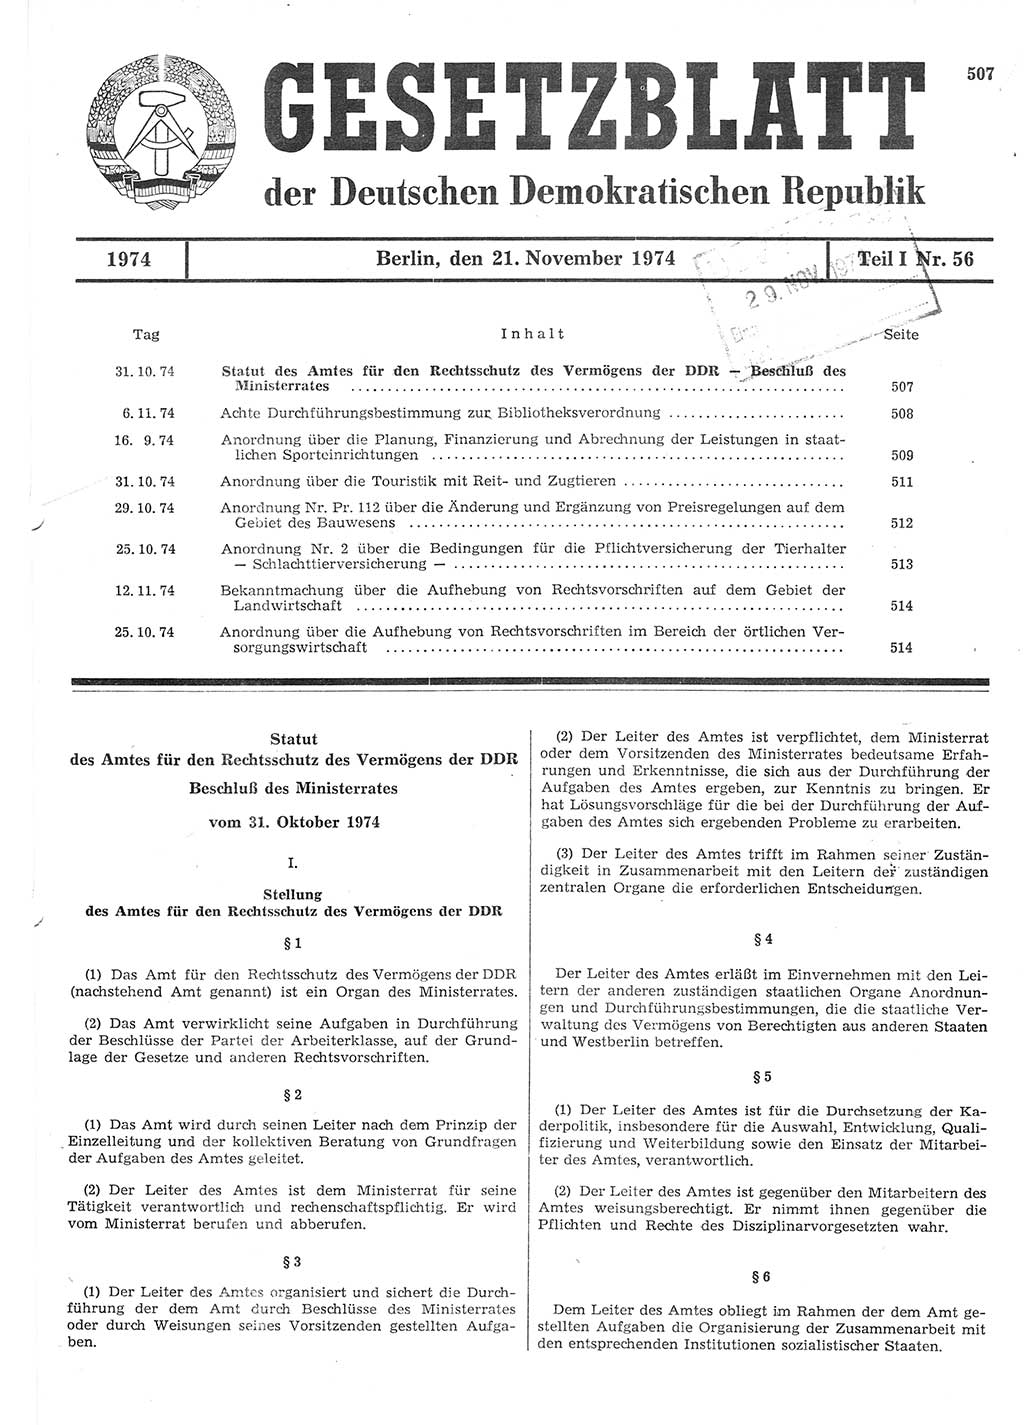 Gesetzblatt (GBl.) der Deutschen Demokratischen Republik (DDR) Teil Ⅰ 1974, Seite 507 (GBl. DDR Ⅰ 1974, S. 507)